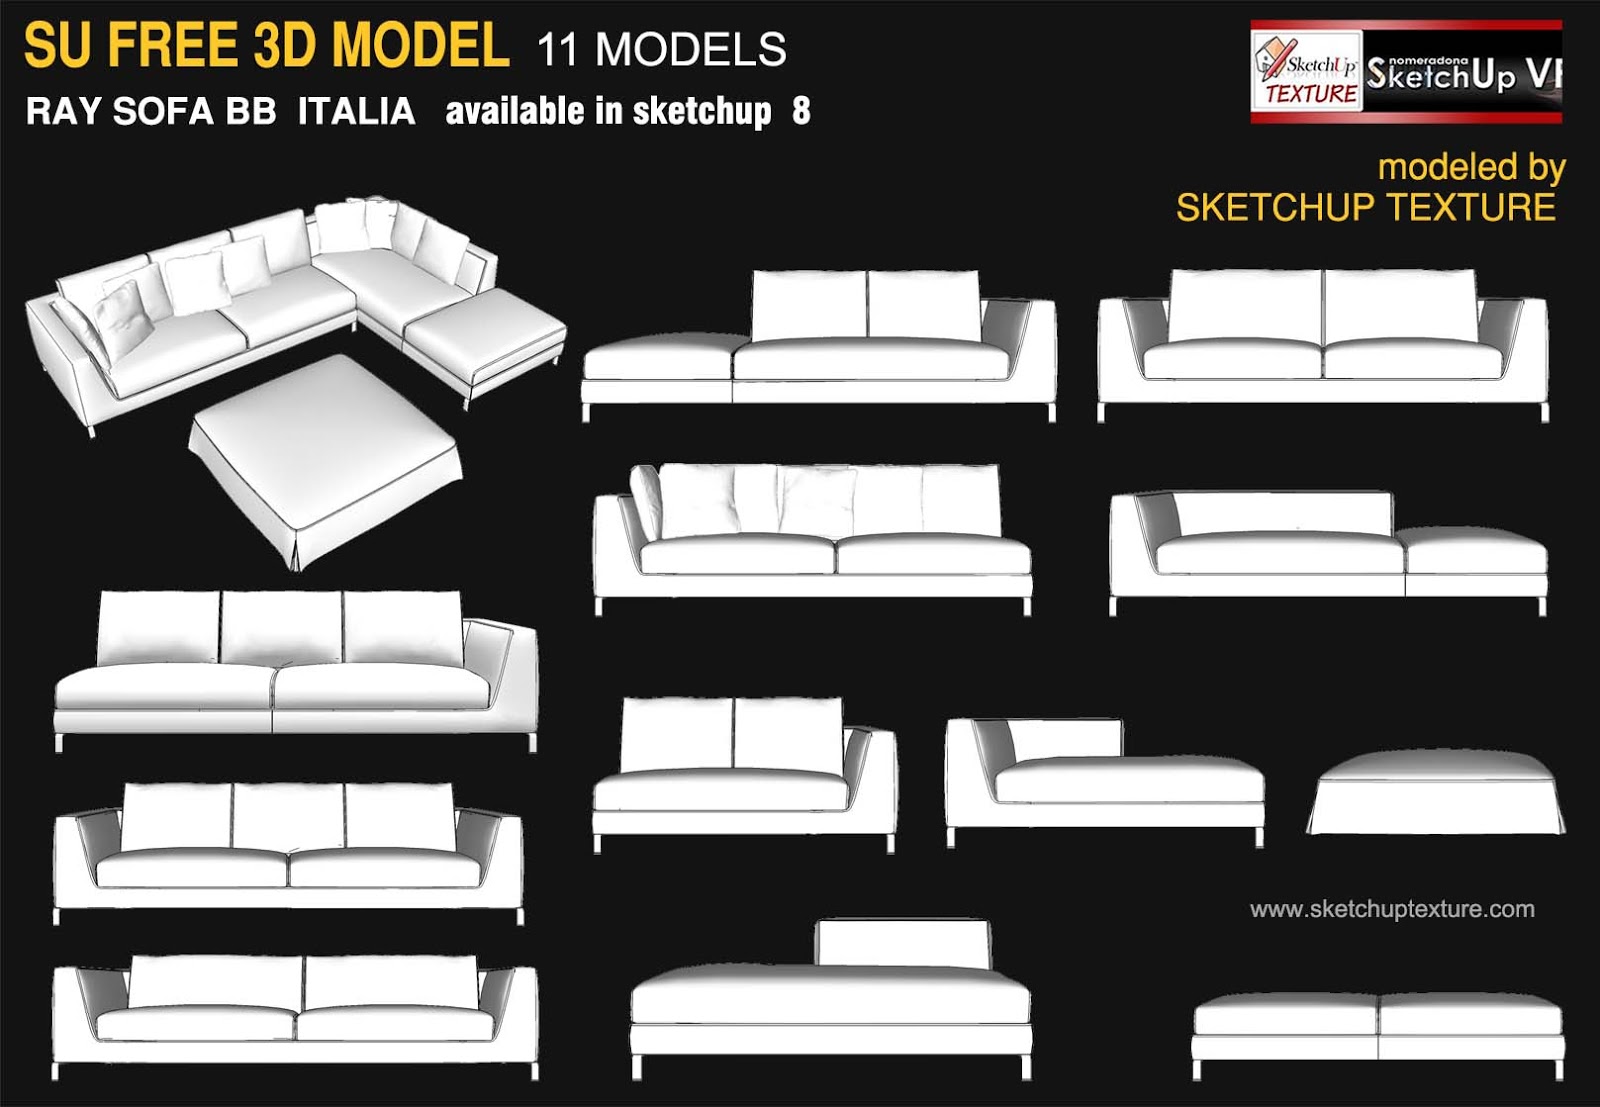  SKETCHUP  TEXTURE awesome free sketchup  3d  model Ray sofa 